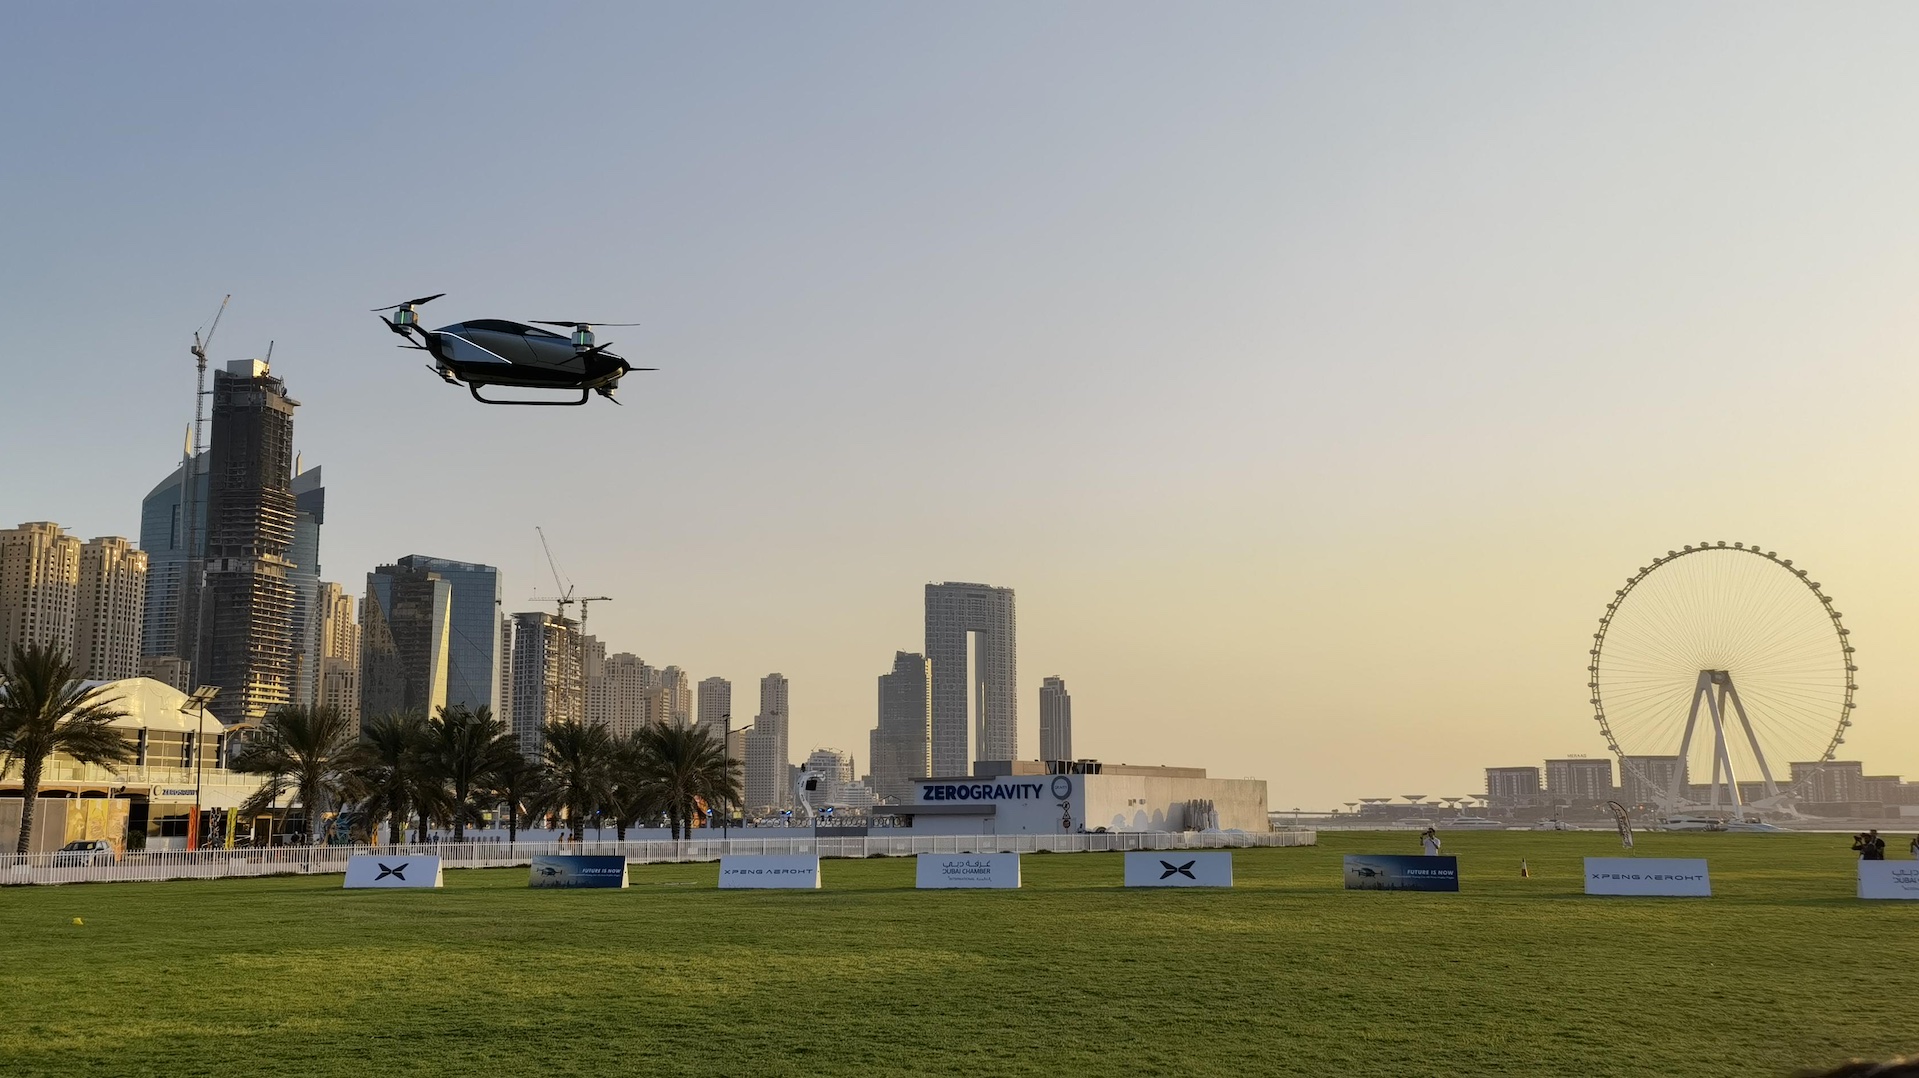 Xpeng X2 gjør første offentlige flyvning i Dubai